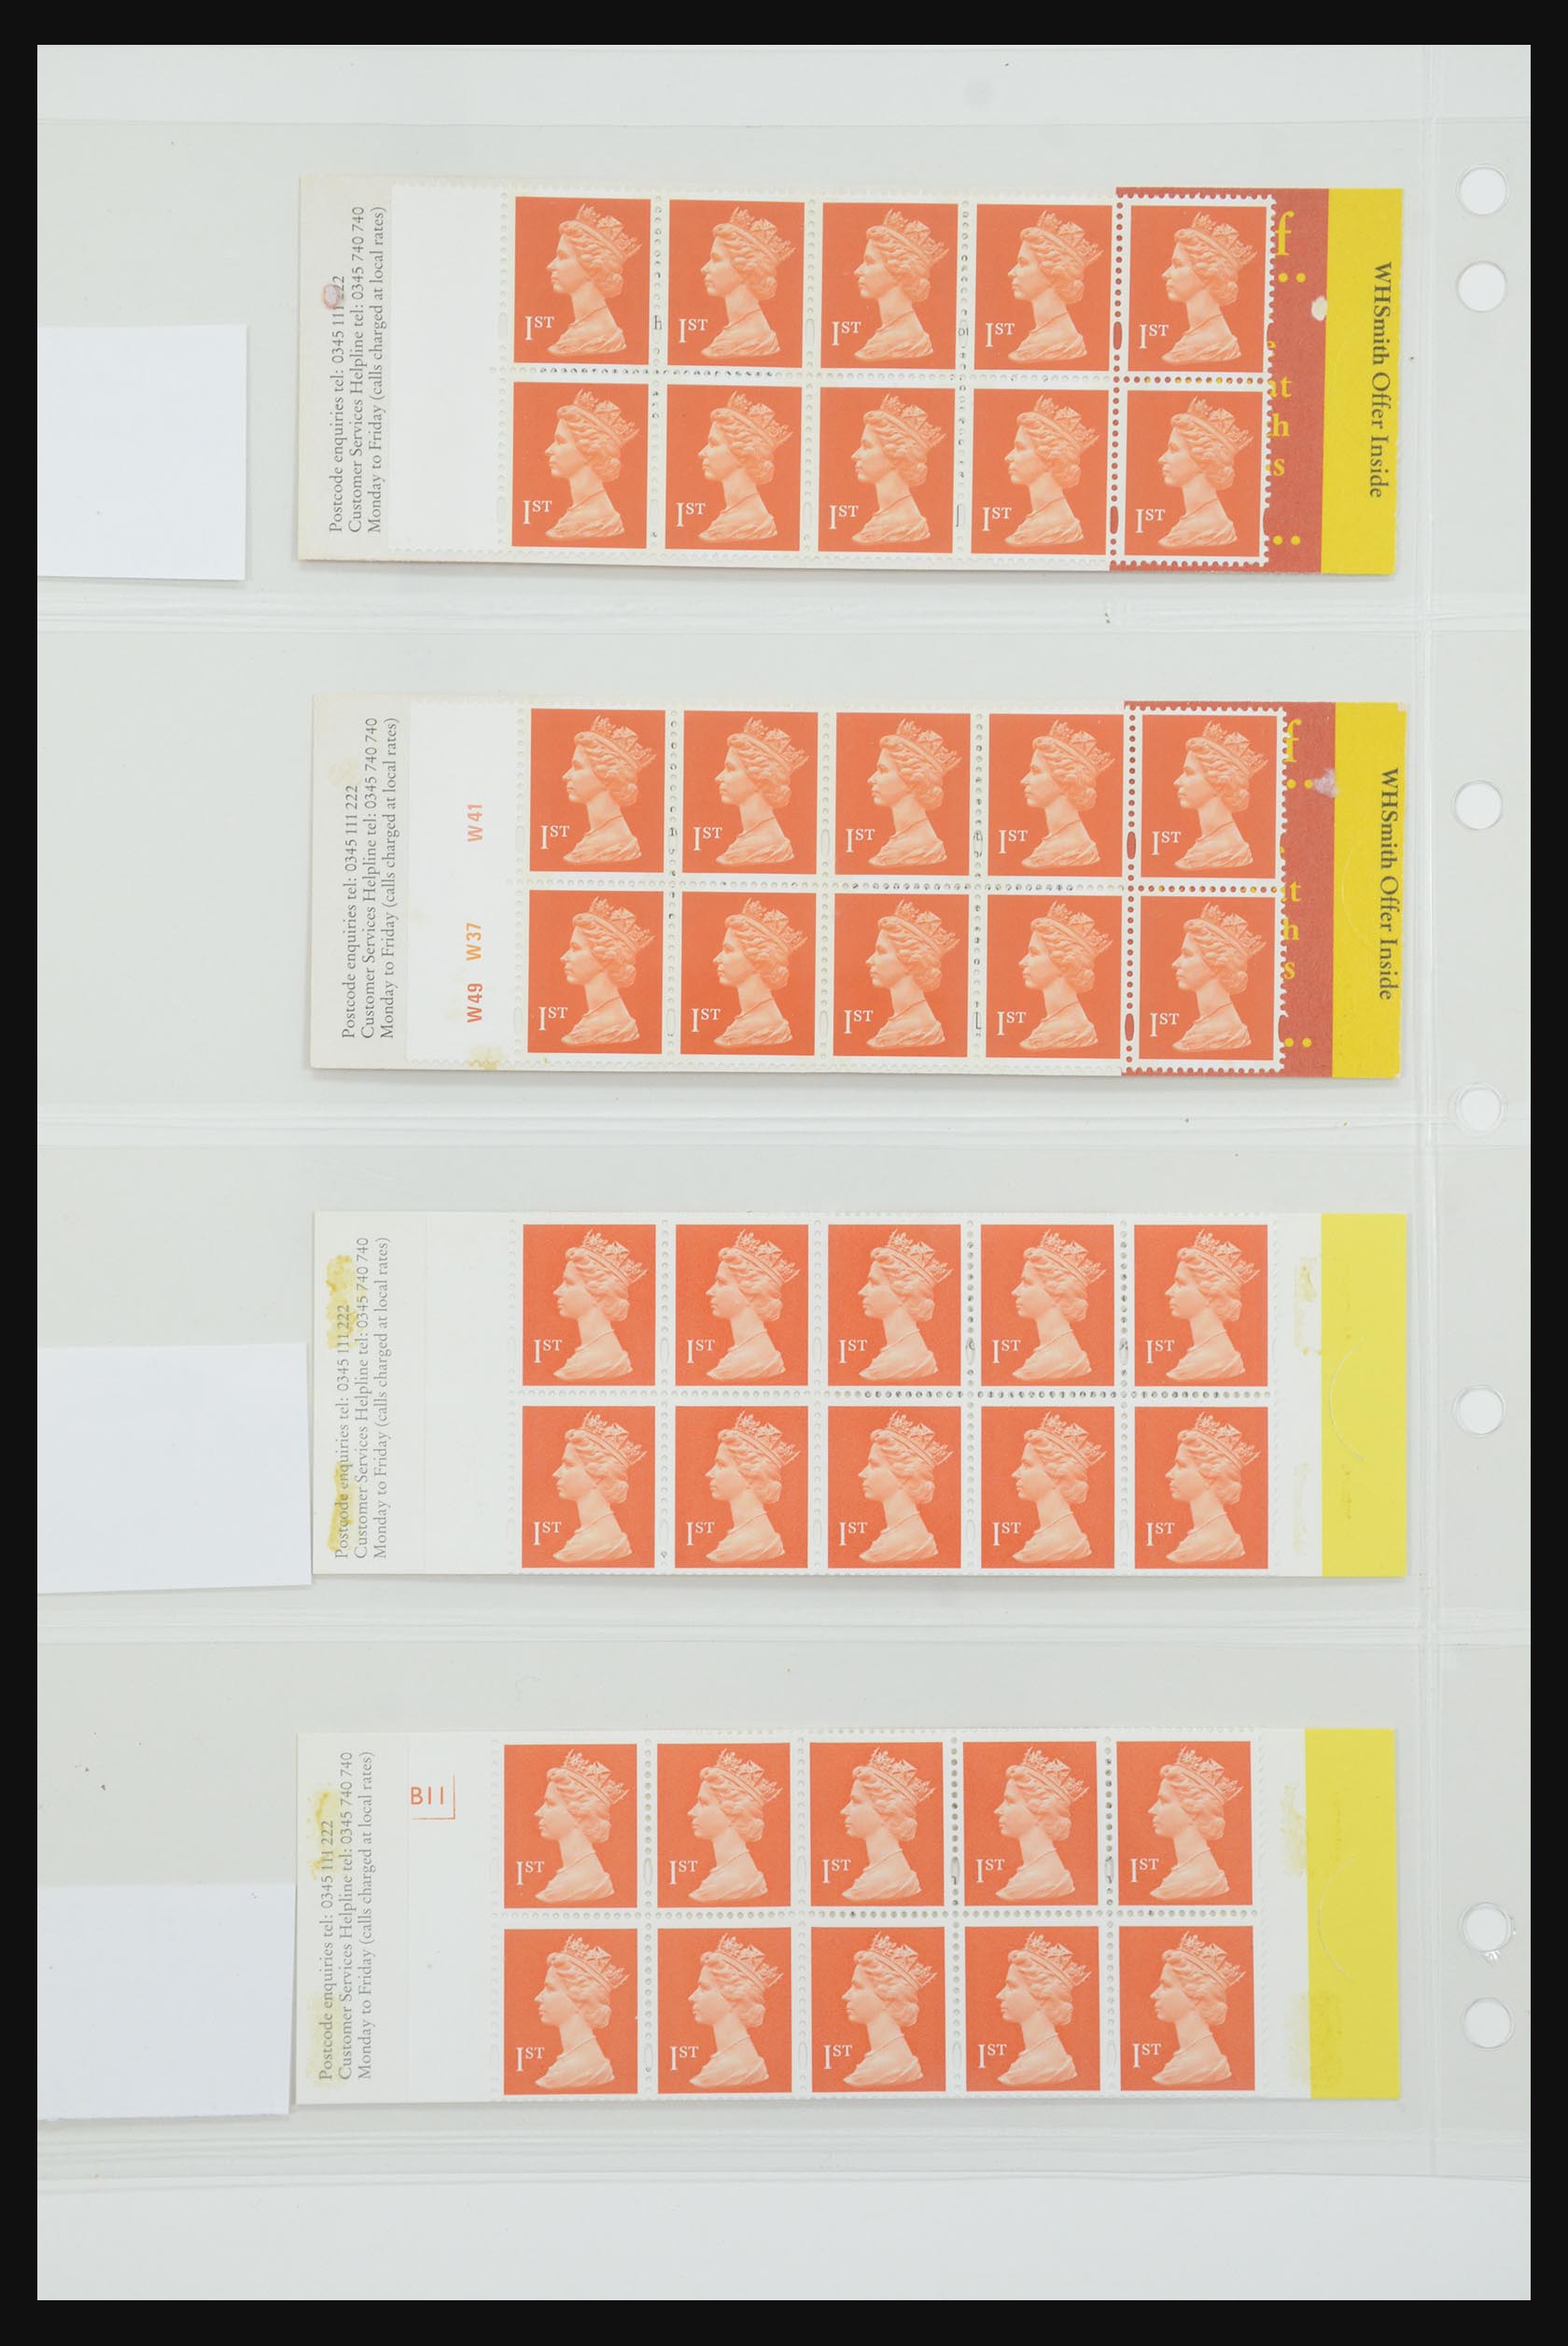 31959 136 - 31959 Engeland postzegelboekjes 1987-2016!!